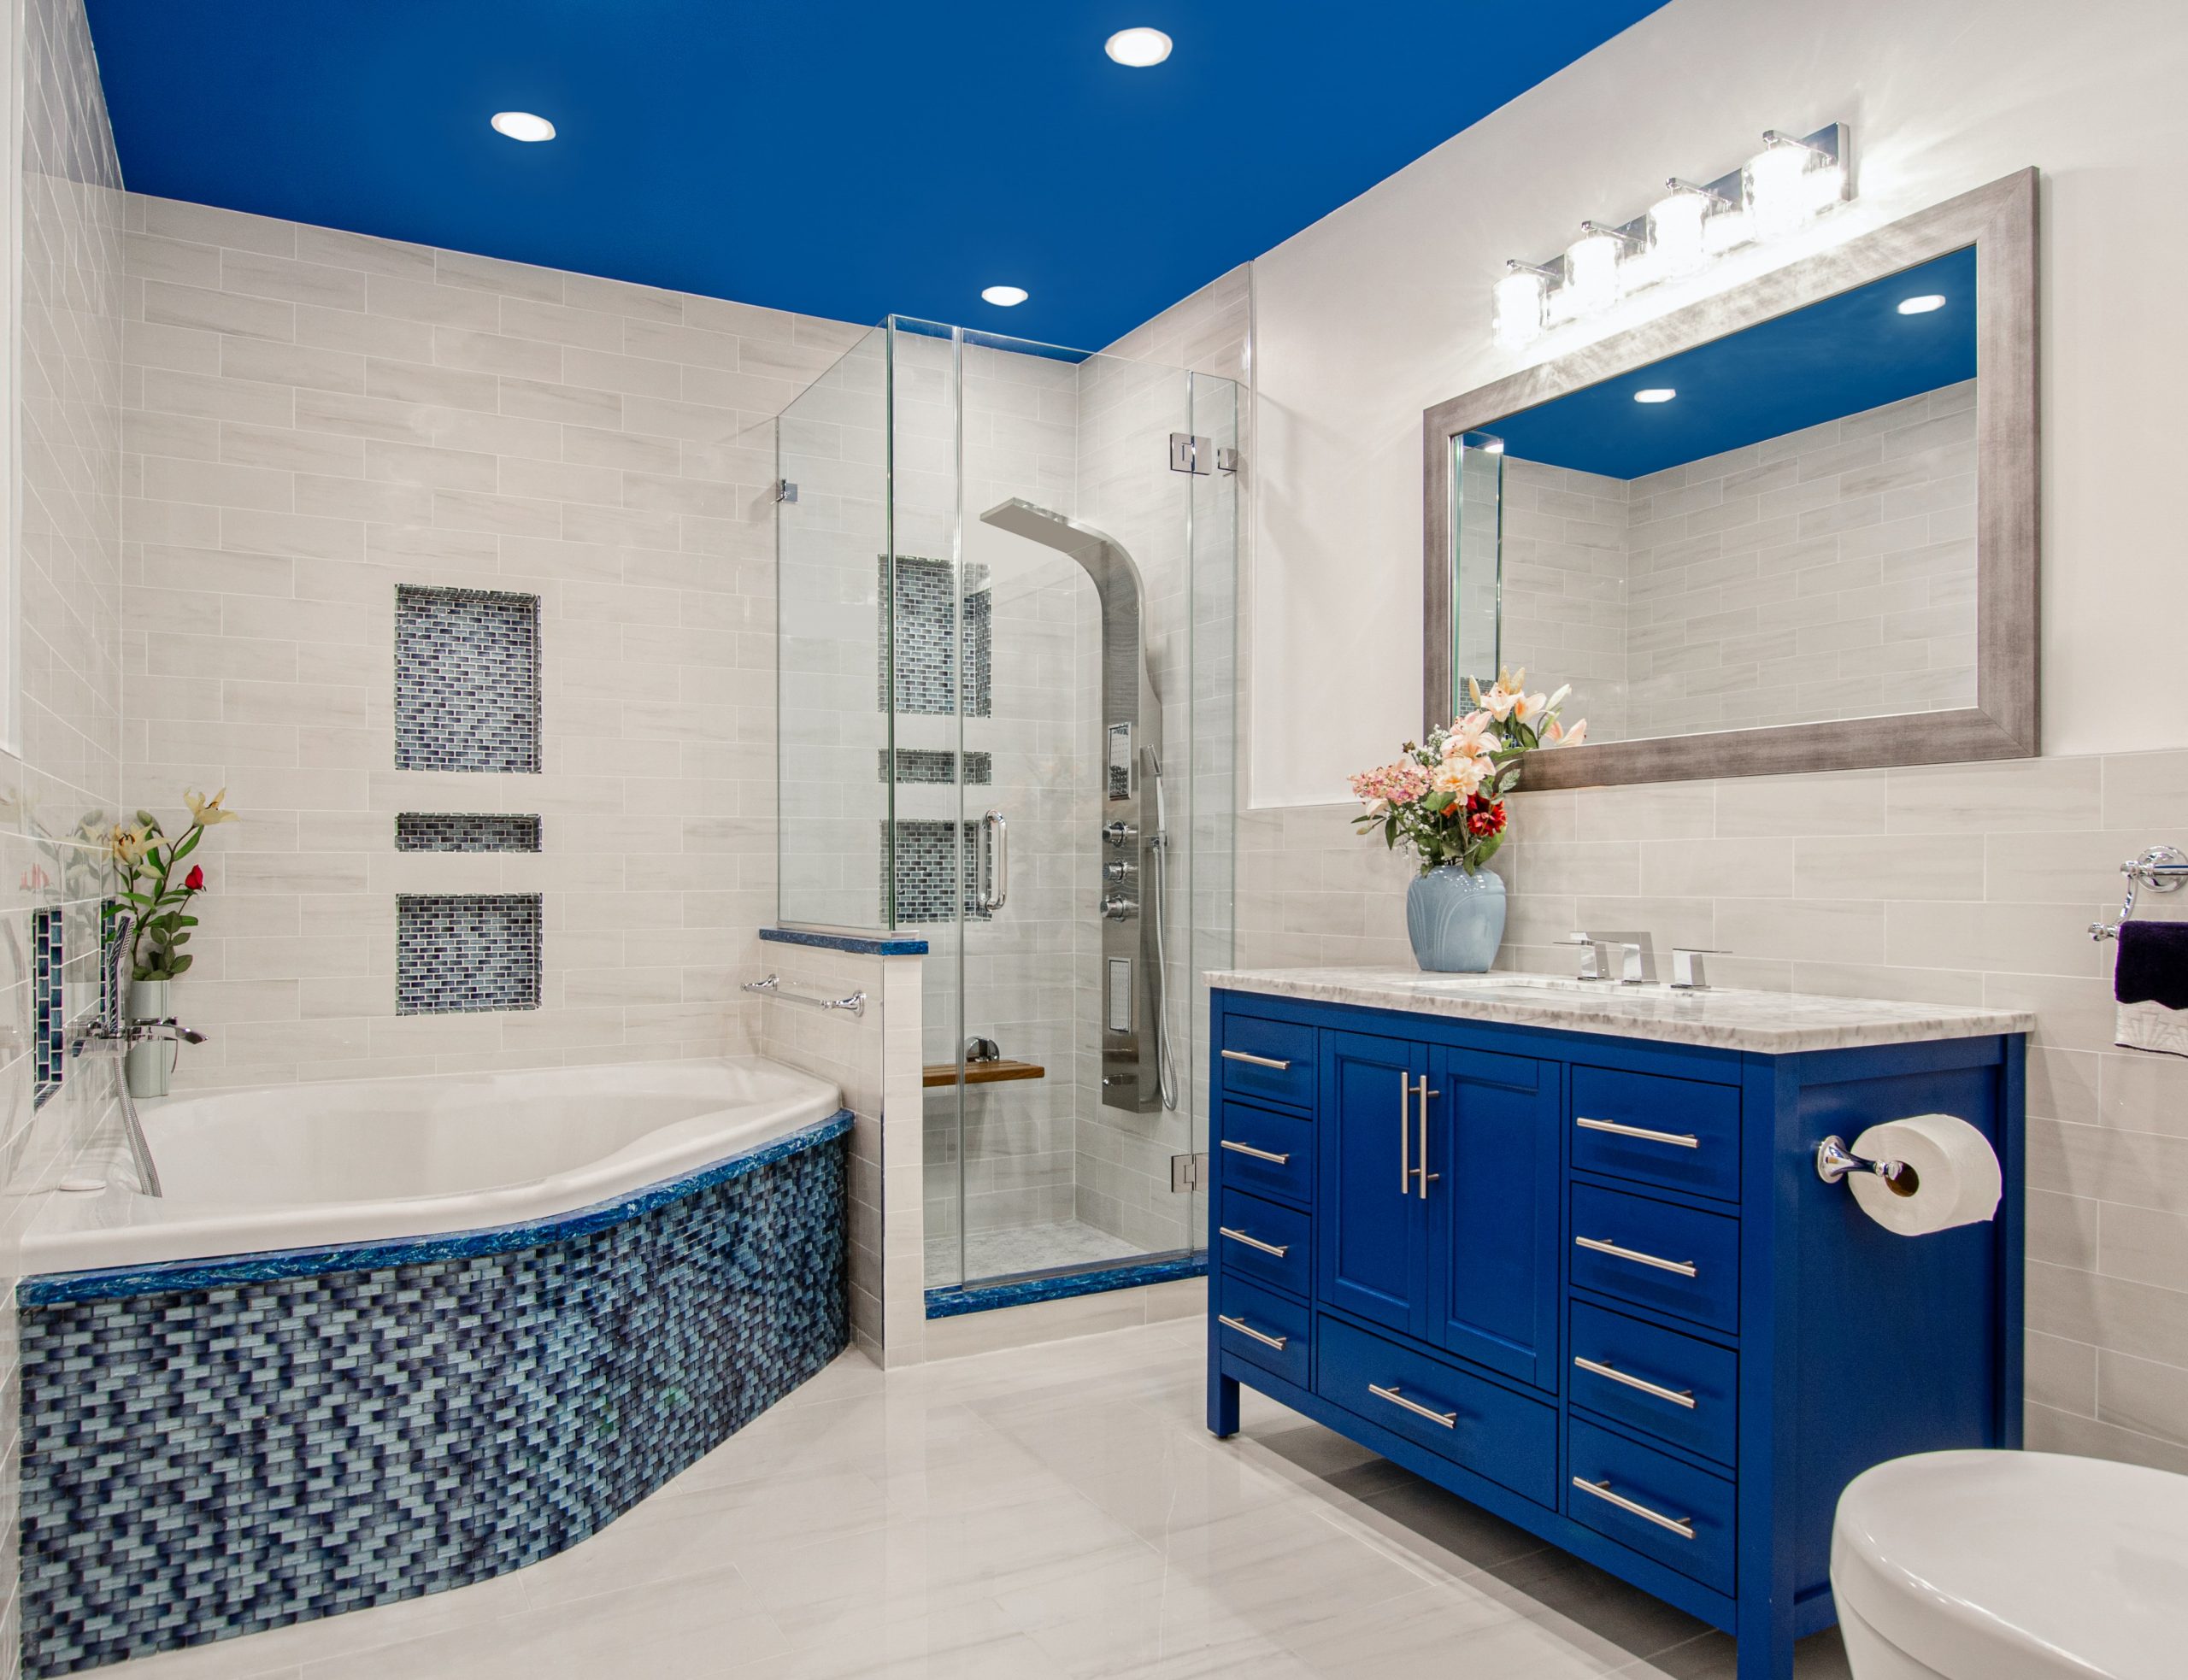 a blue themed bathroom